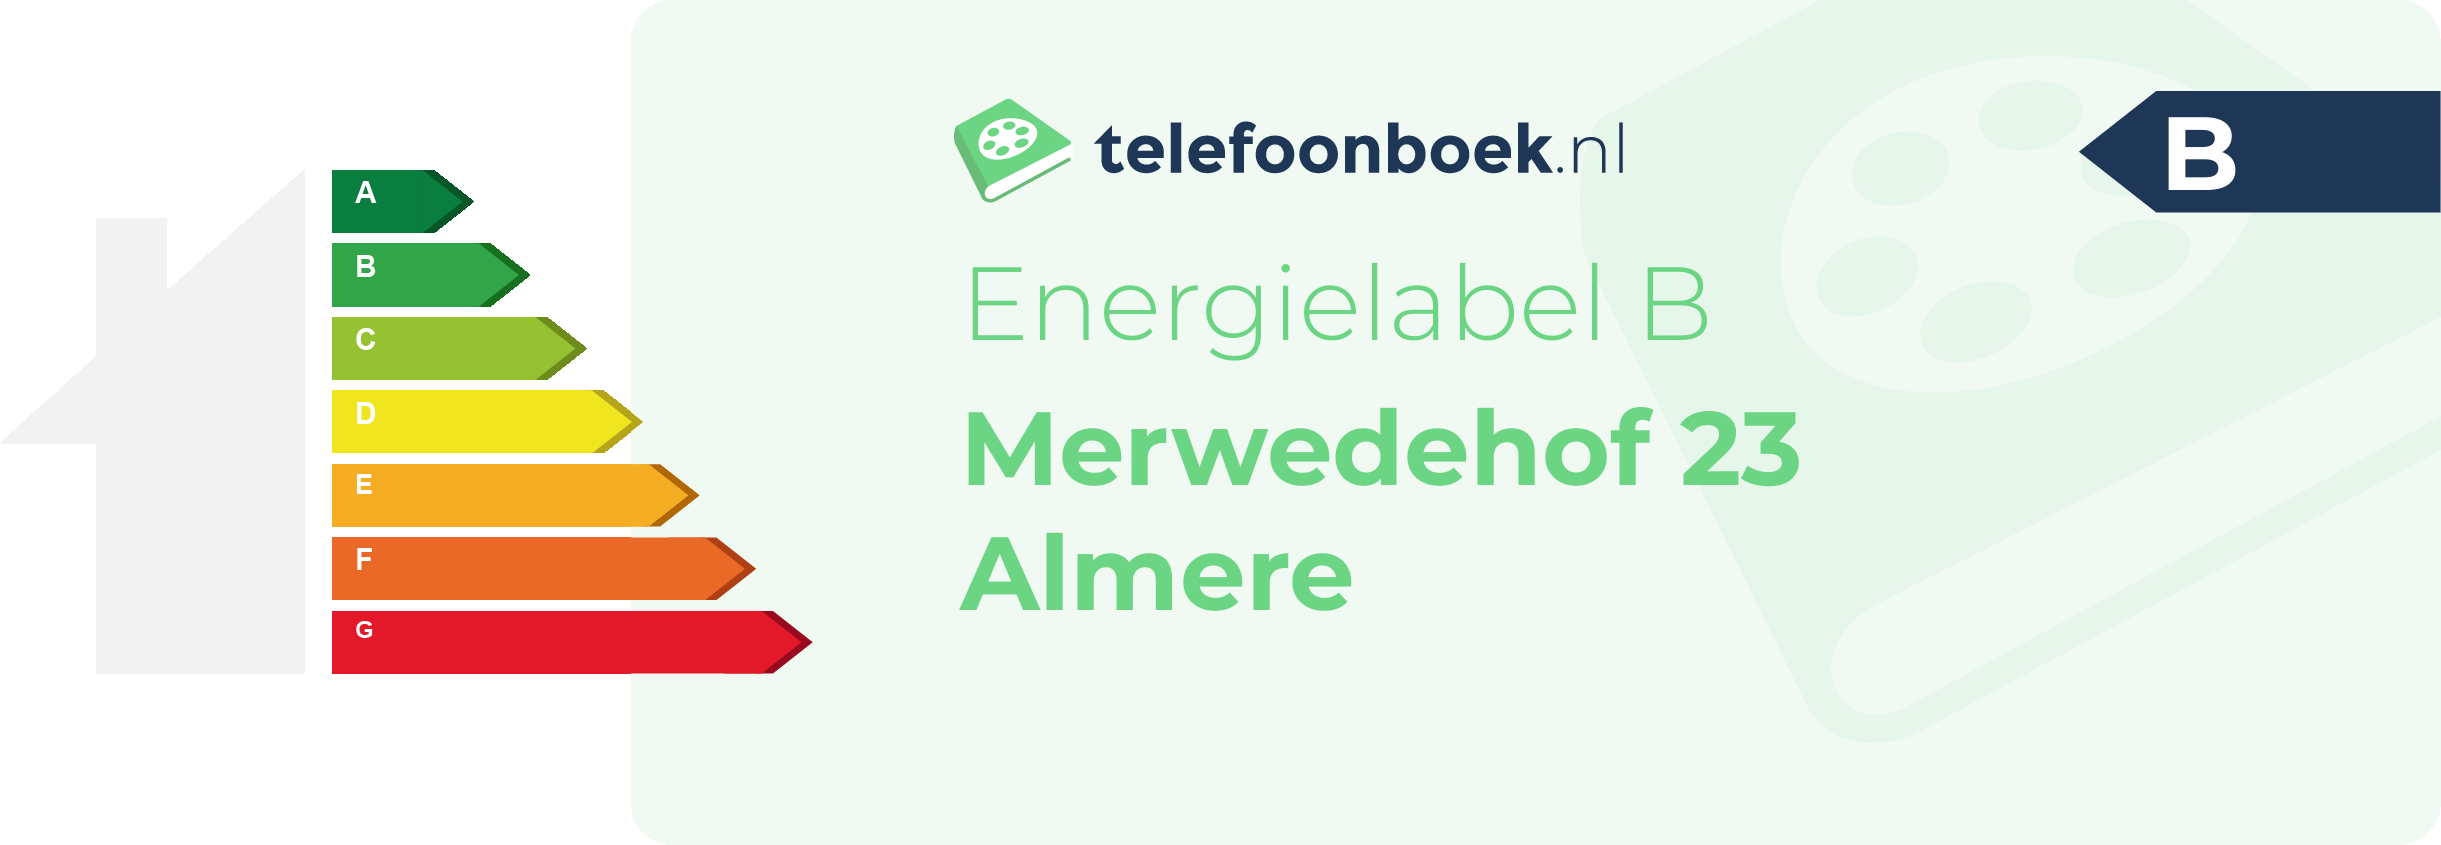 Energielabel Merwedehof 23 Almere